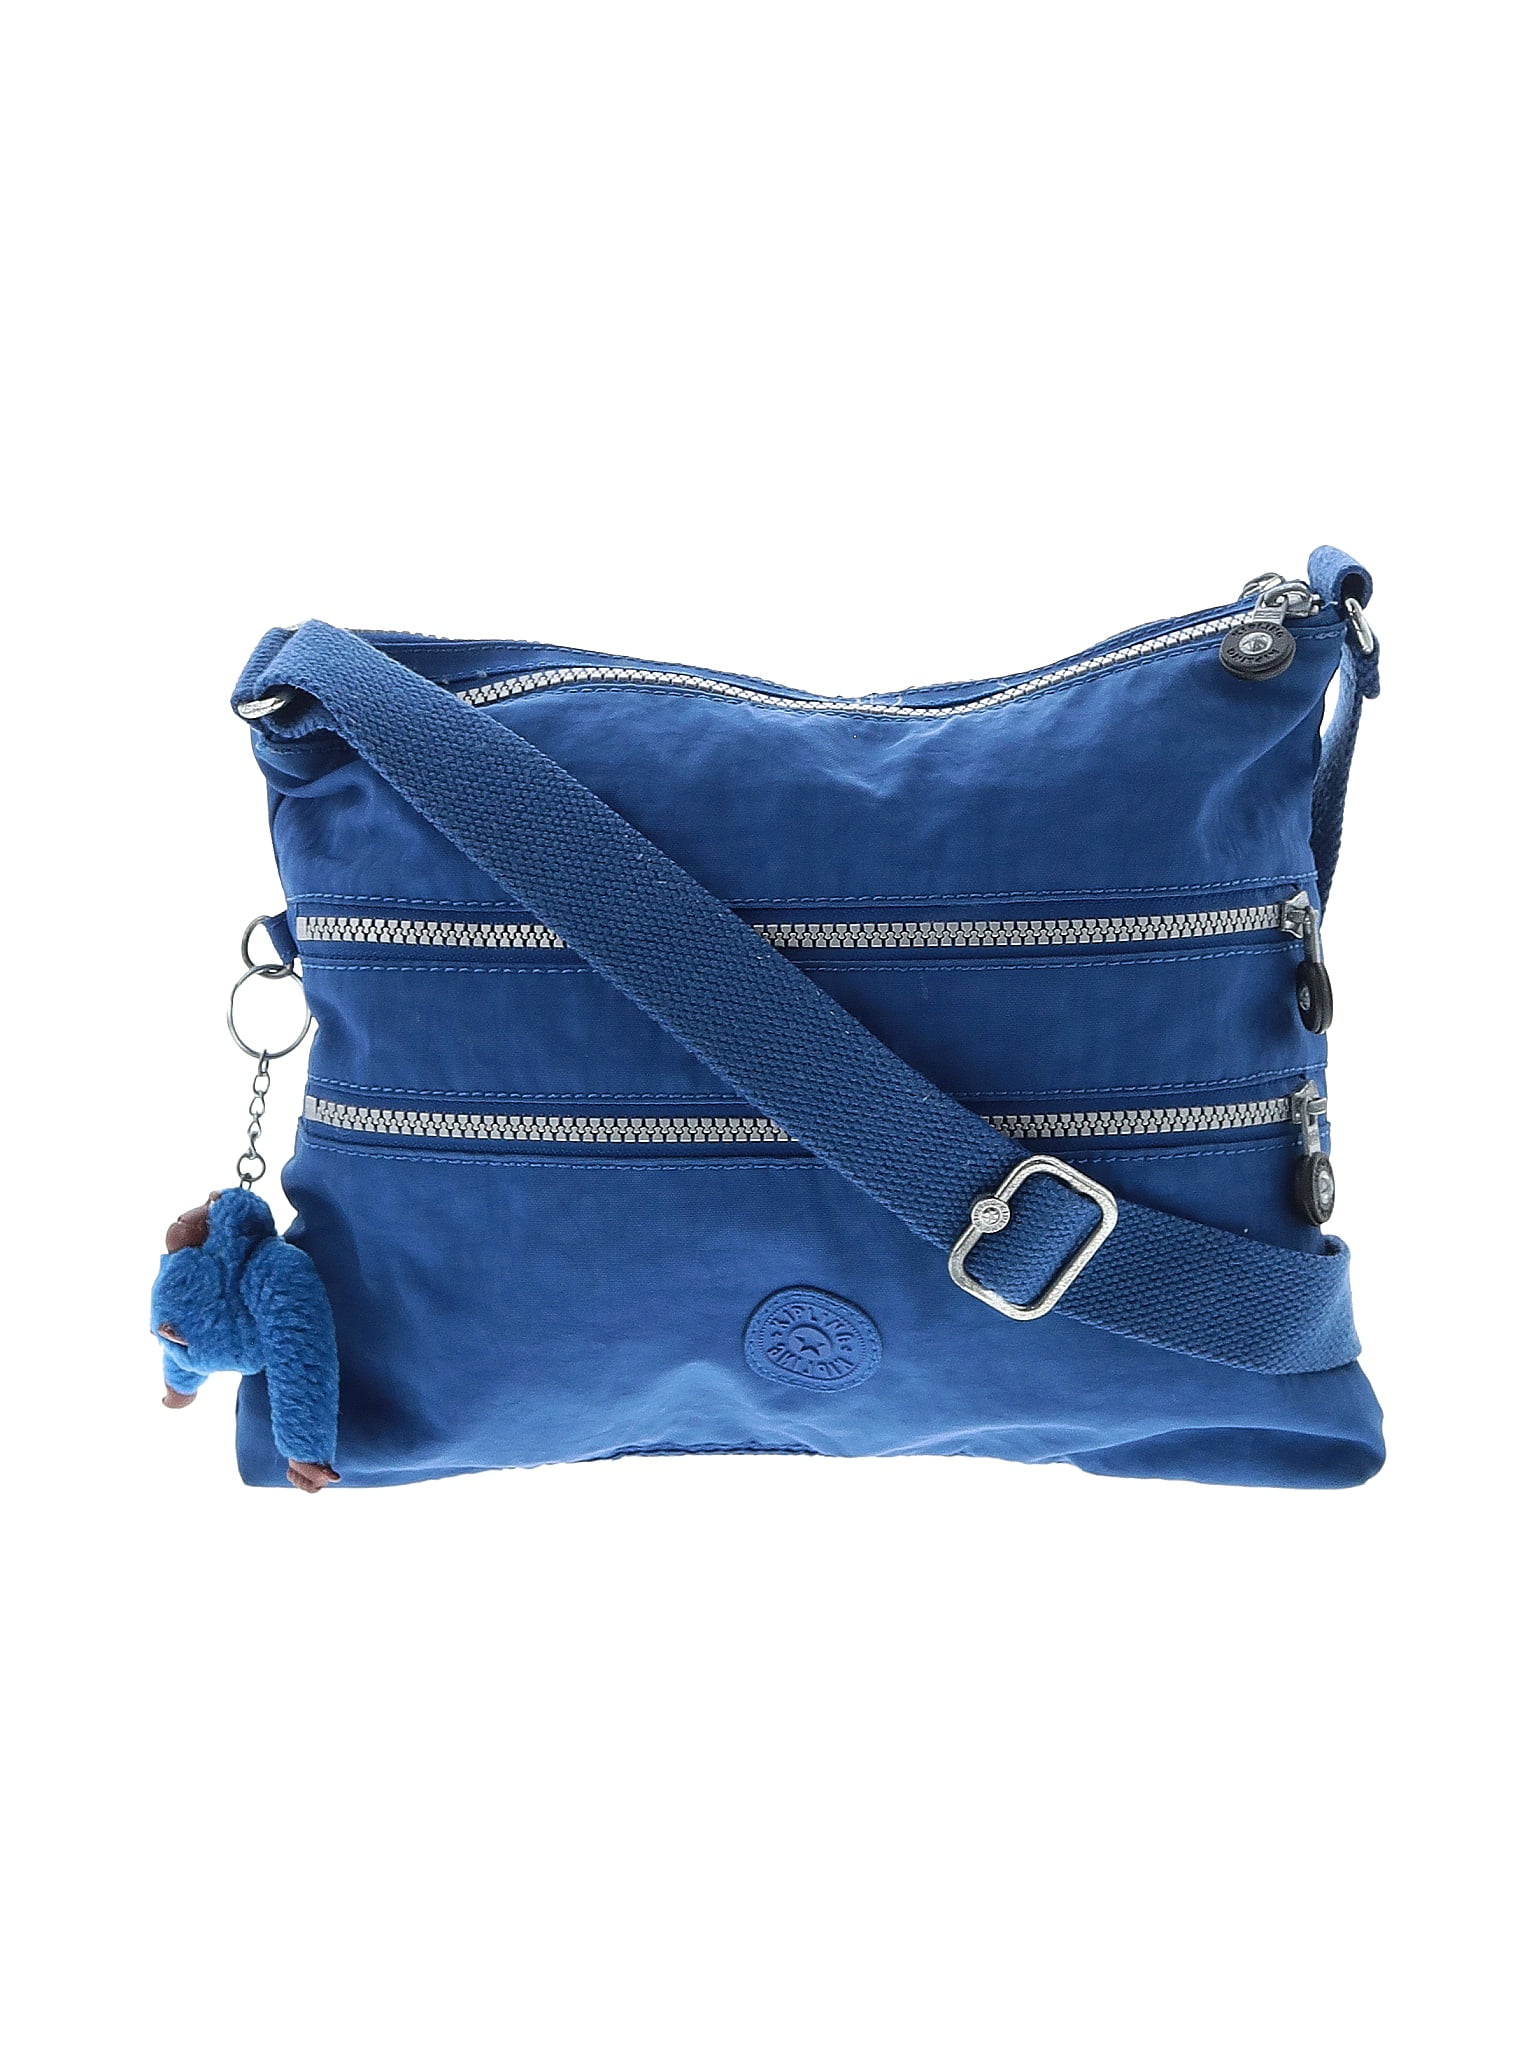 Kipling Solid Blue Crossbody Bag One Size - 64% off | thredUP